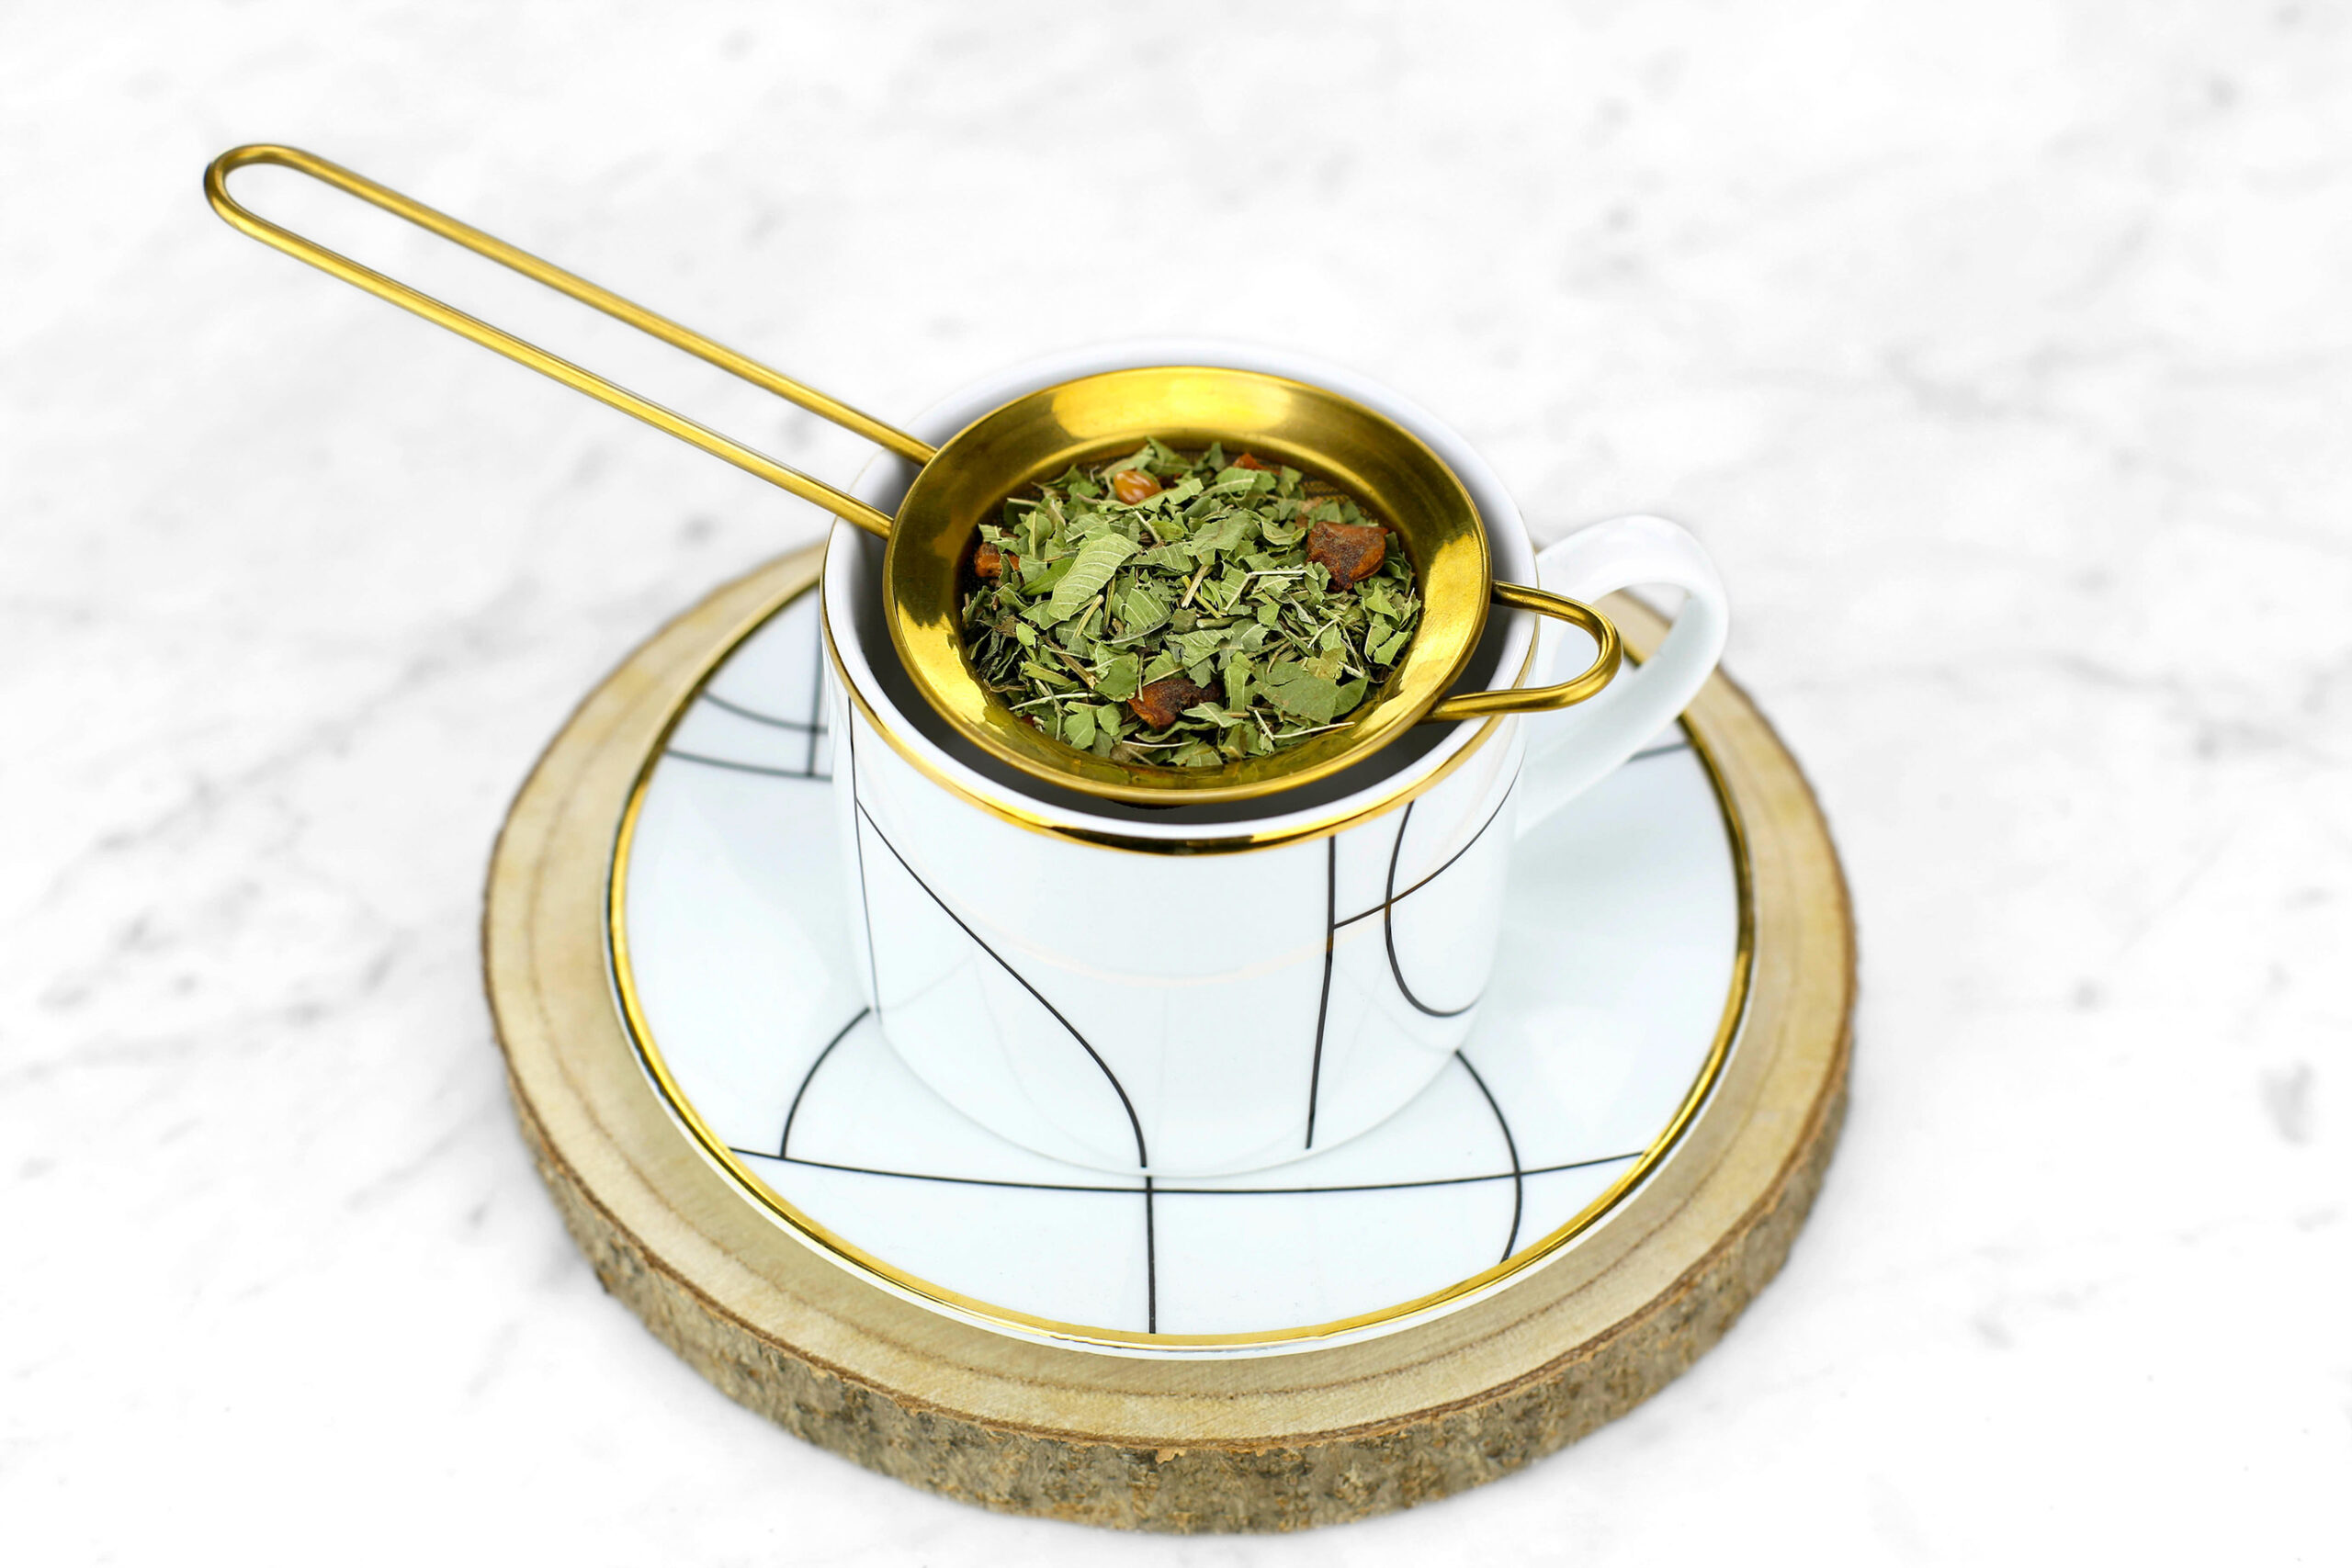 IGUOHAO203.109 Tasse à thé en céramique avec infuseur et couvercle, système  d'infusion de thé en vrac, dessinez votre propre design, 16 oz, vert menthe  